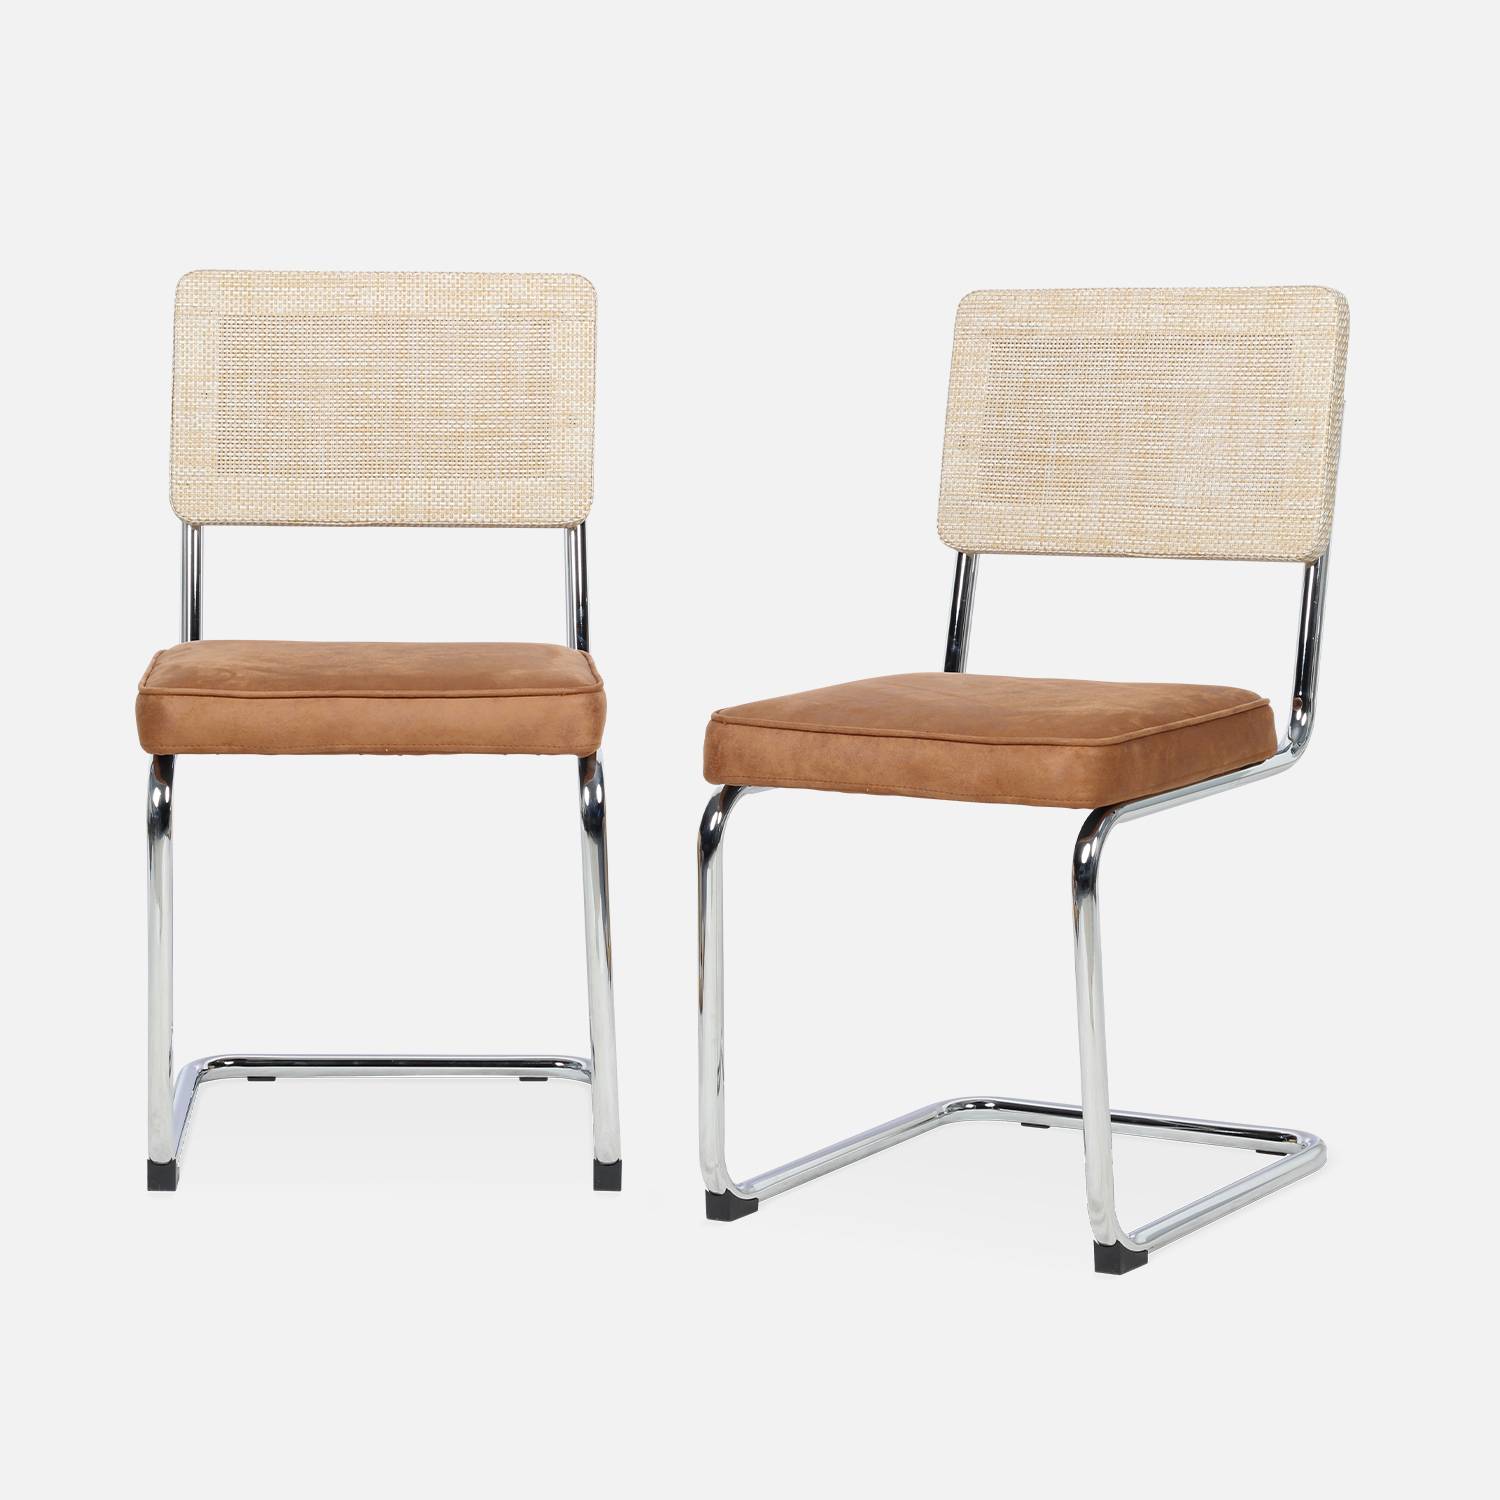 2 chaises cantilever - Maja - tissu marron clair et résine effet rotin, 46 x 54,5 x 84,5cm   Photo4